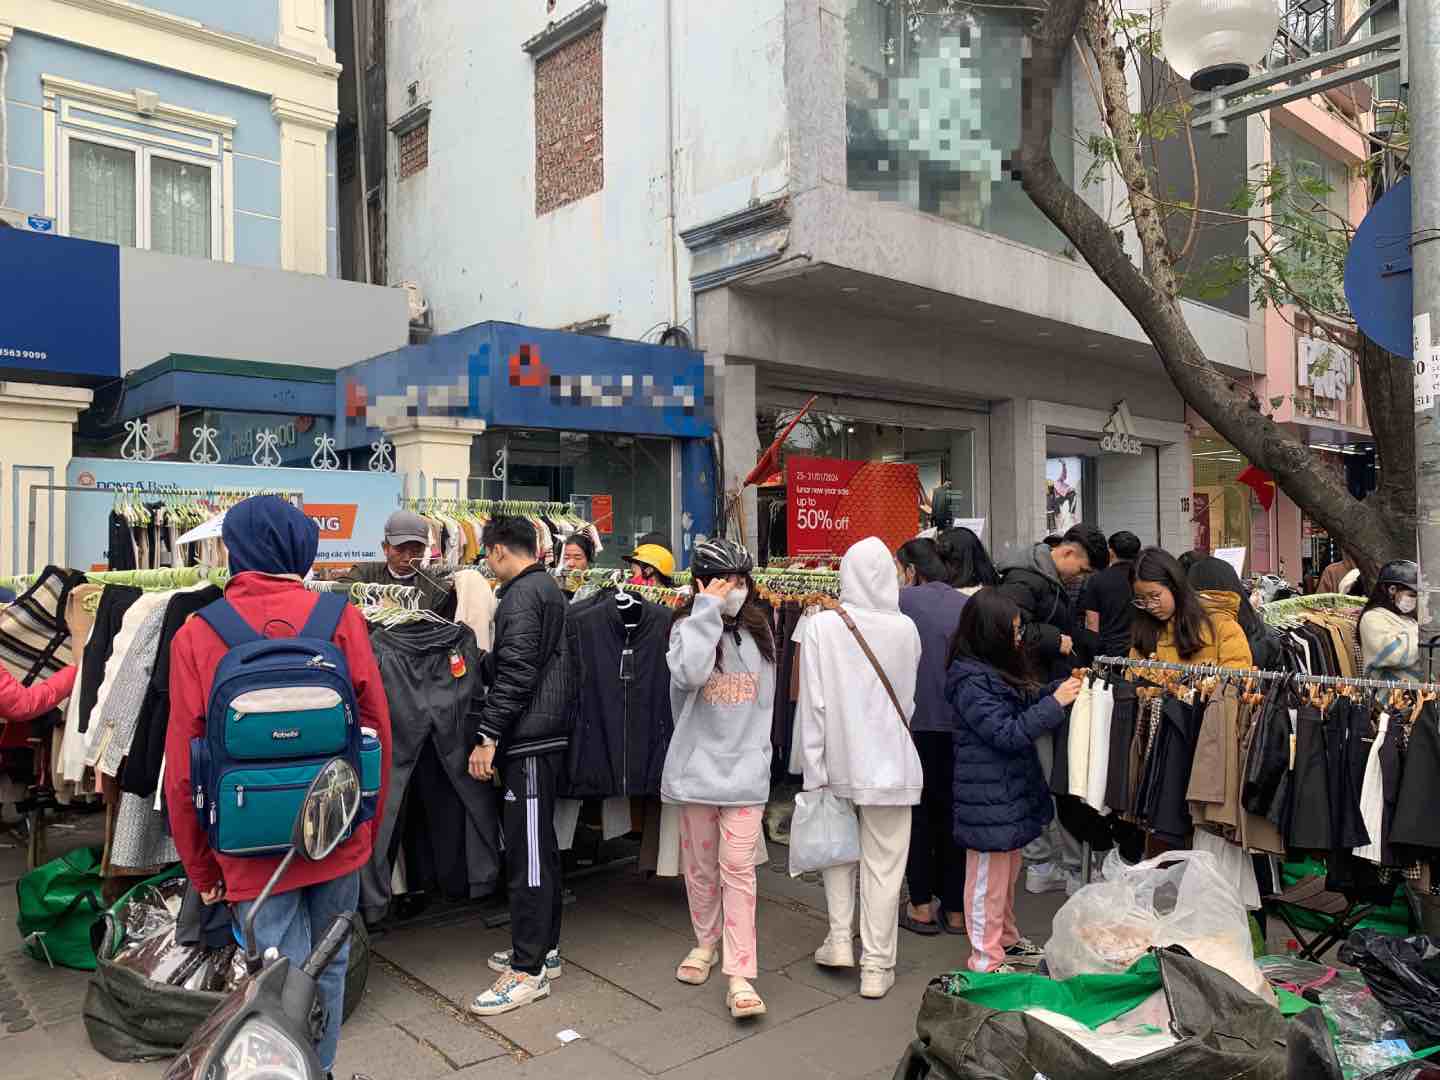 Tiểu thương bày bán quần áo ngang nhiên trên vỉa hè tại phố Chùa Bộc. Ảnh: Nhật Minh